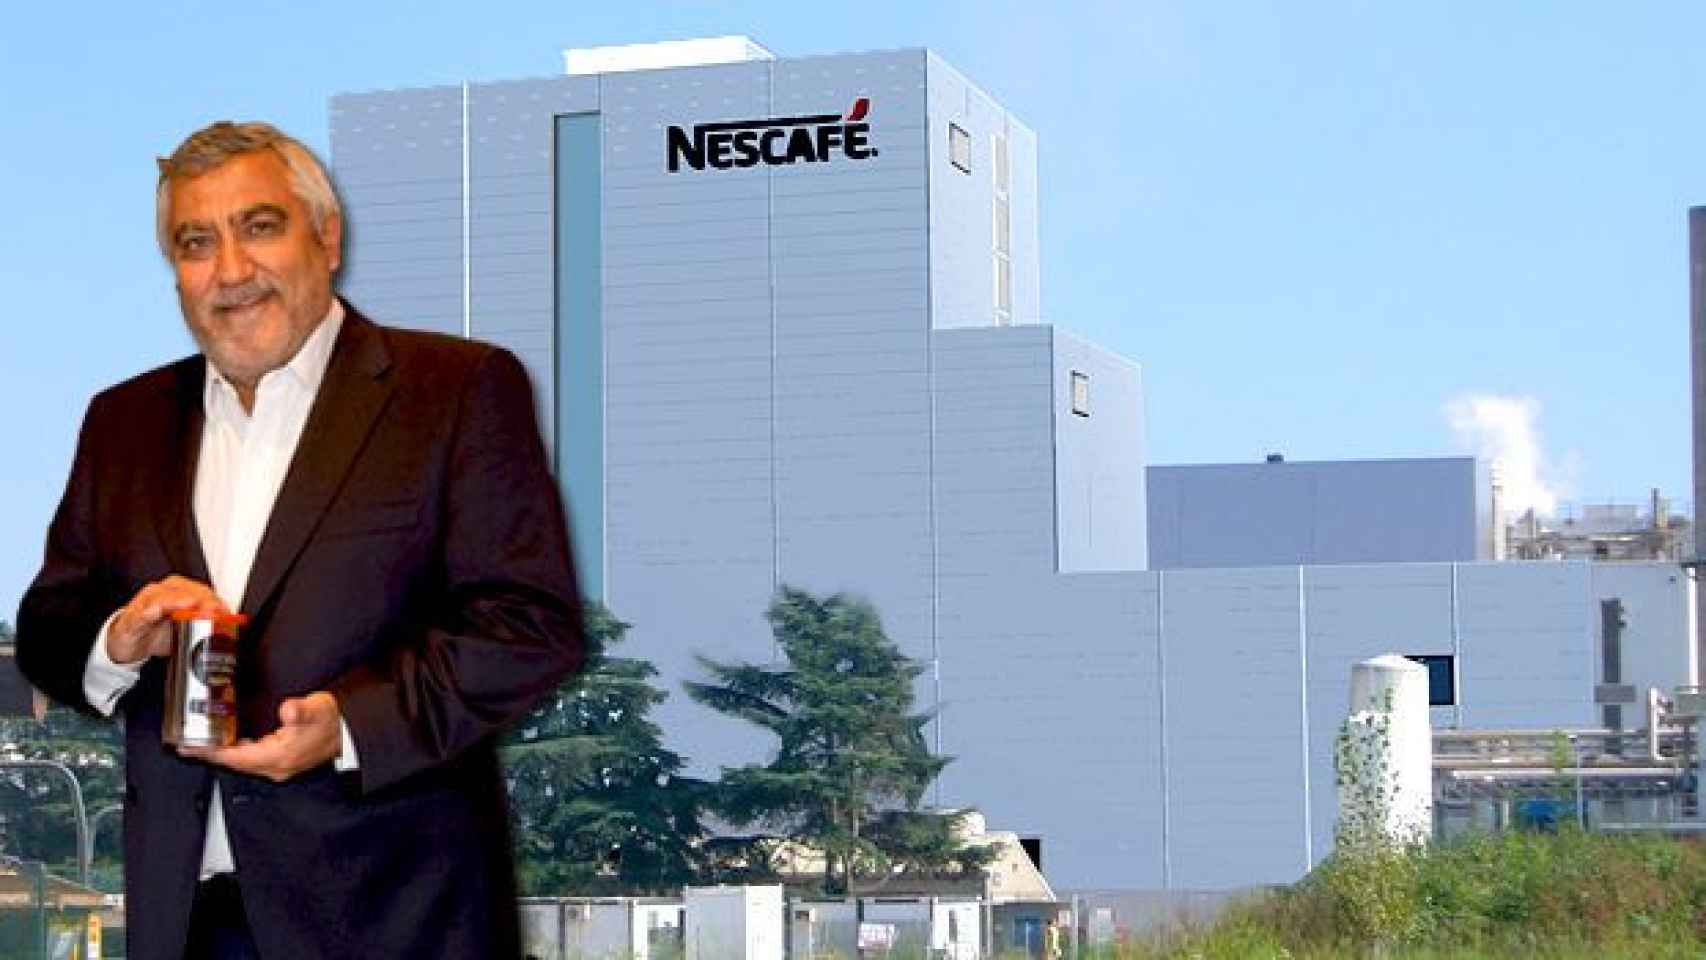 Laurent Dereux, director general de Nestlé España, y la factoría de Nescafé de Girona / FOTOMONTAJE DE CG